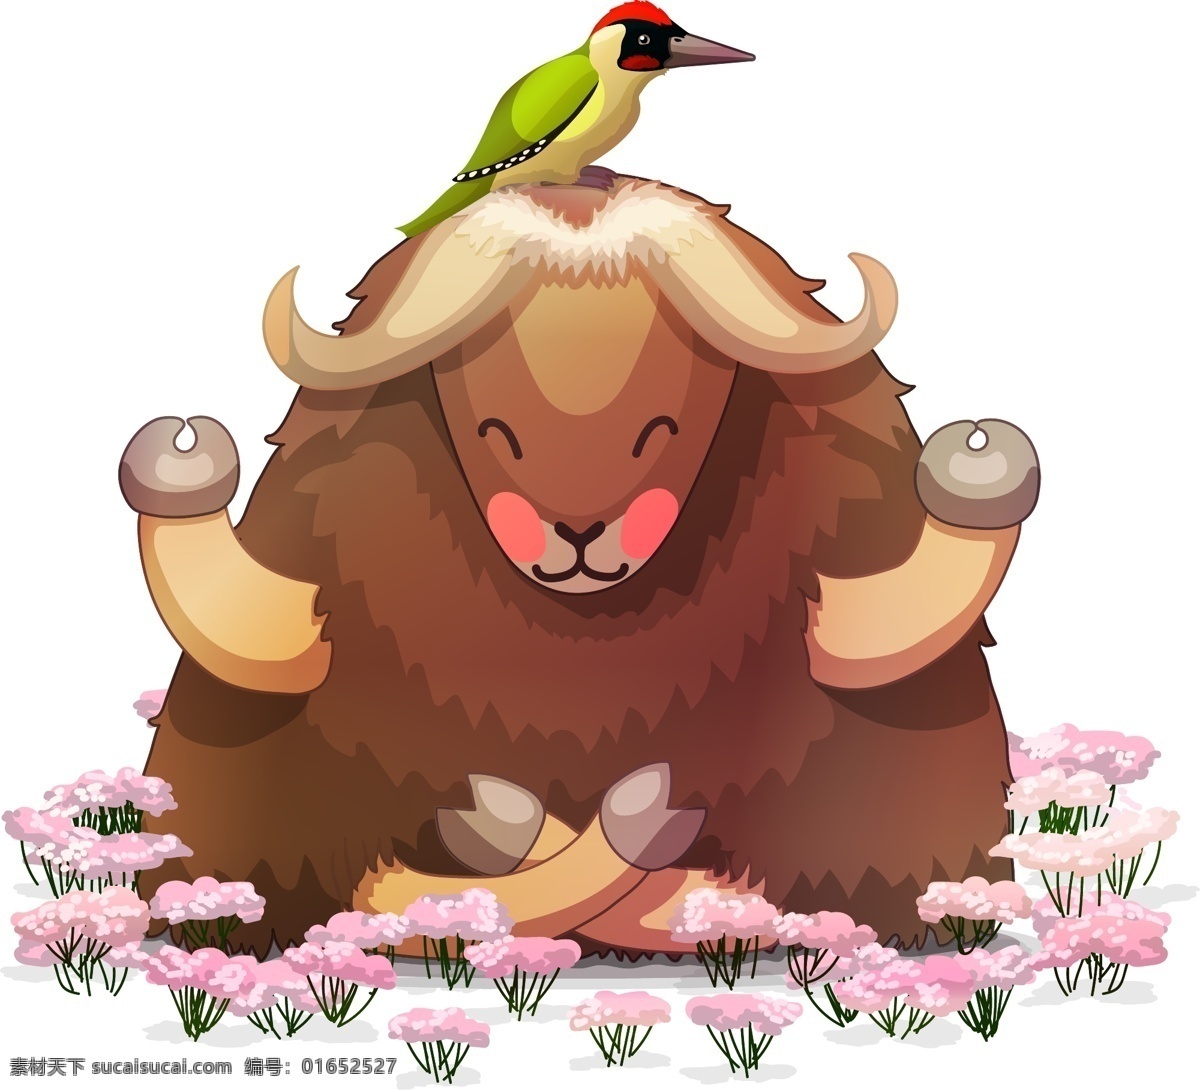 卡通 可爱 绵羊 插画 花朵 动物 小鸟 打座 盘腿